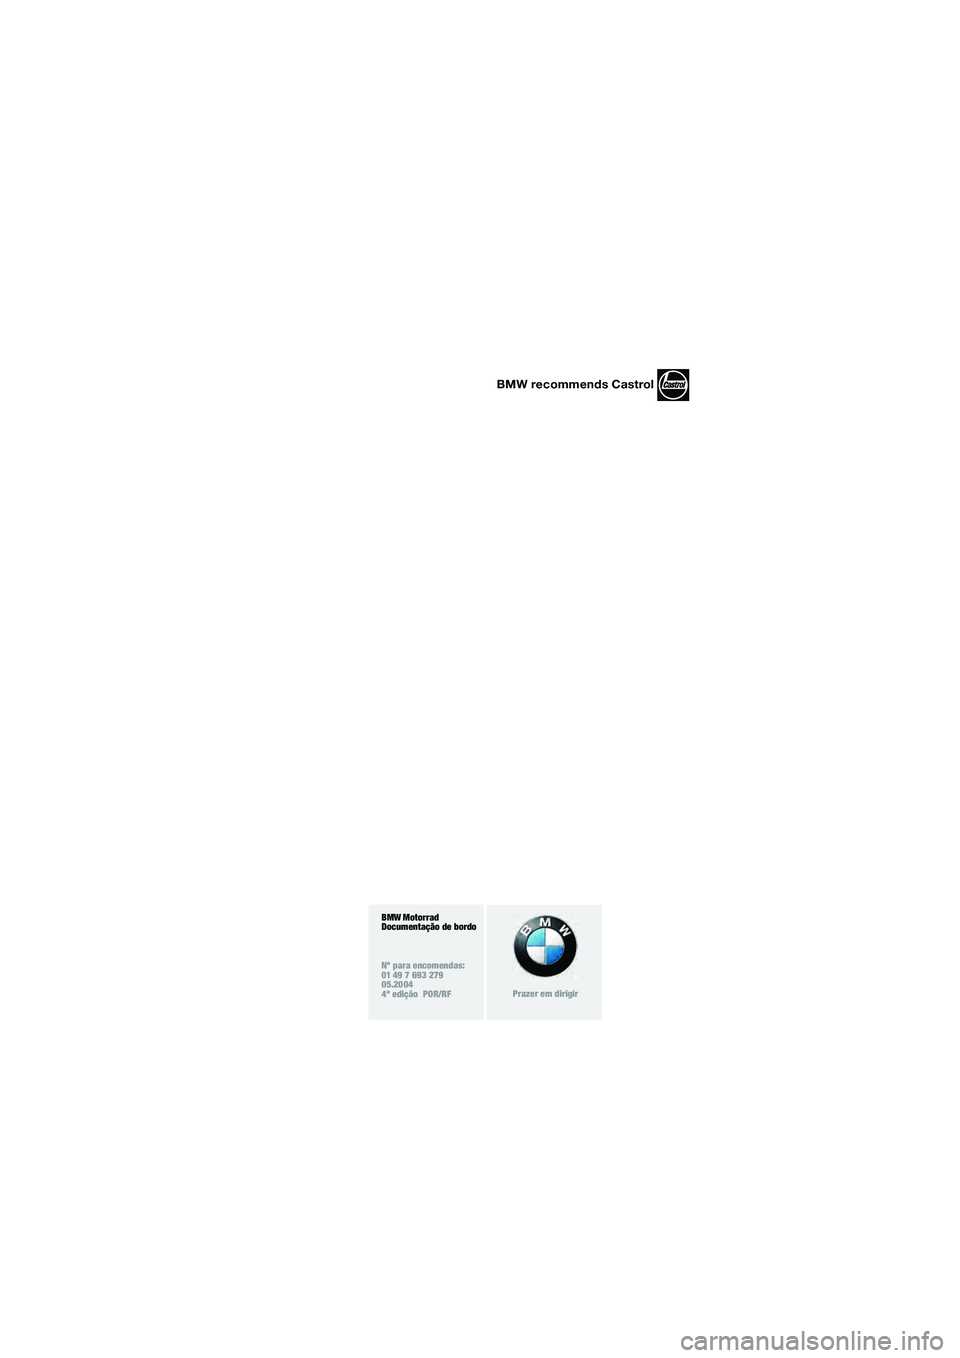 BMW MOTORRAD R 850 R 2004  Manual do condutor (in Portuguese) BMW Motorrad
Documentação de bordo 
Nº para encomendas:
01 49 7 693 279
05.2004
4ª edição  POR/RF
Prazer em dirigir
BMW recommends Castrol
10r28bkb3.book  Seite 90  Dienstag, 25. Mai 2004  4:29 